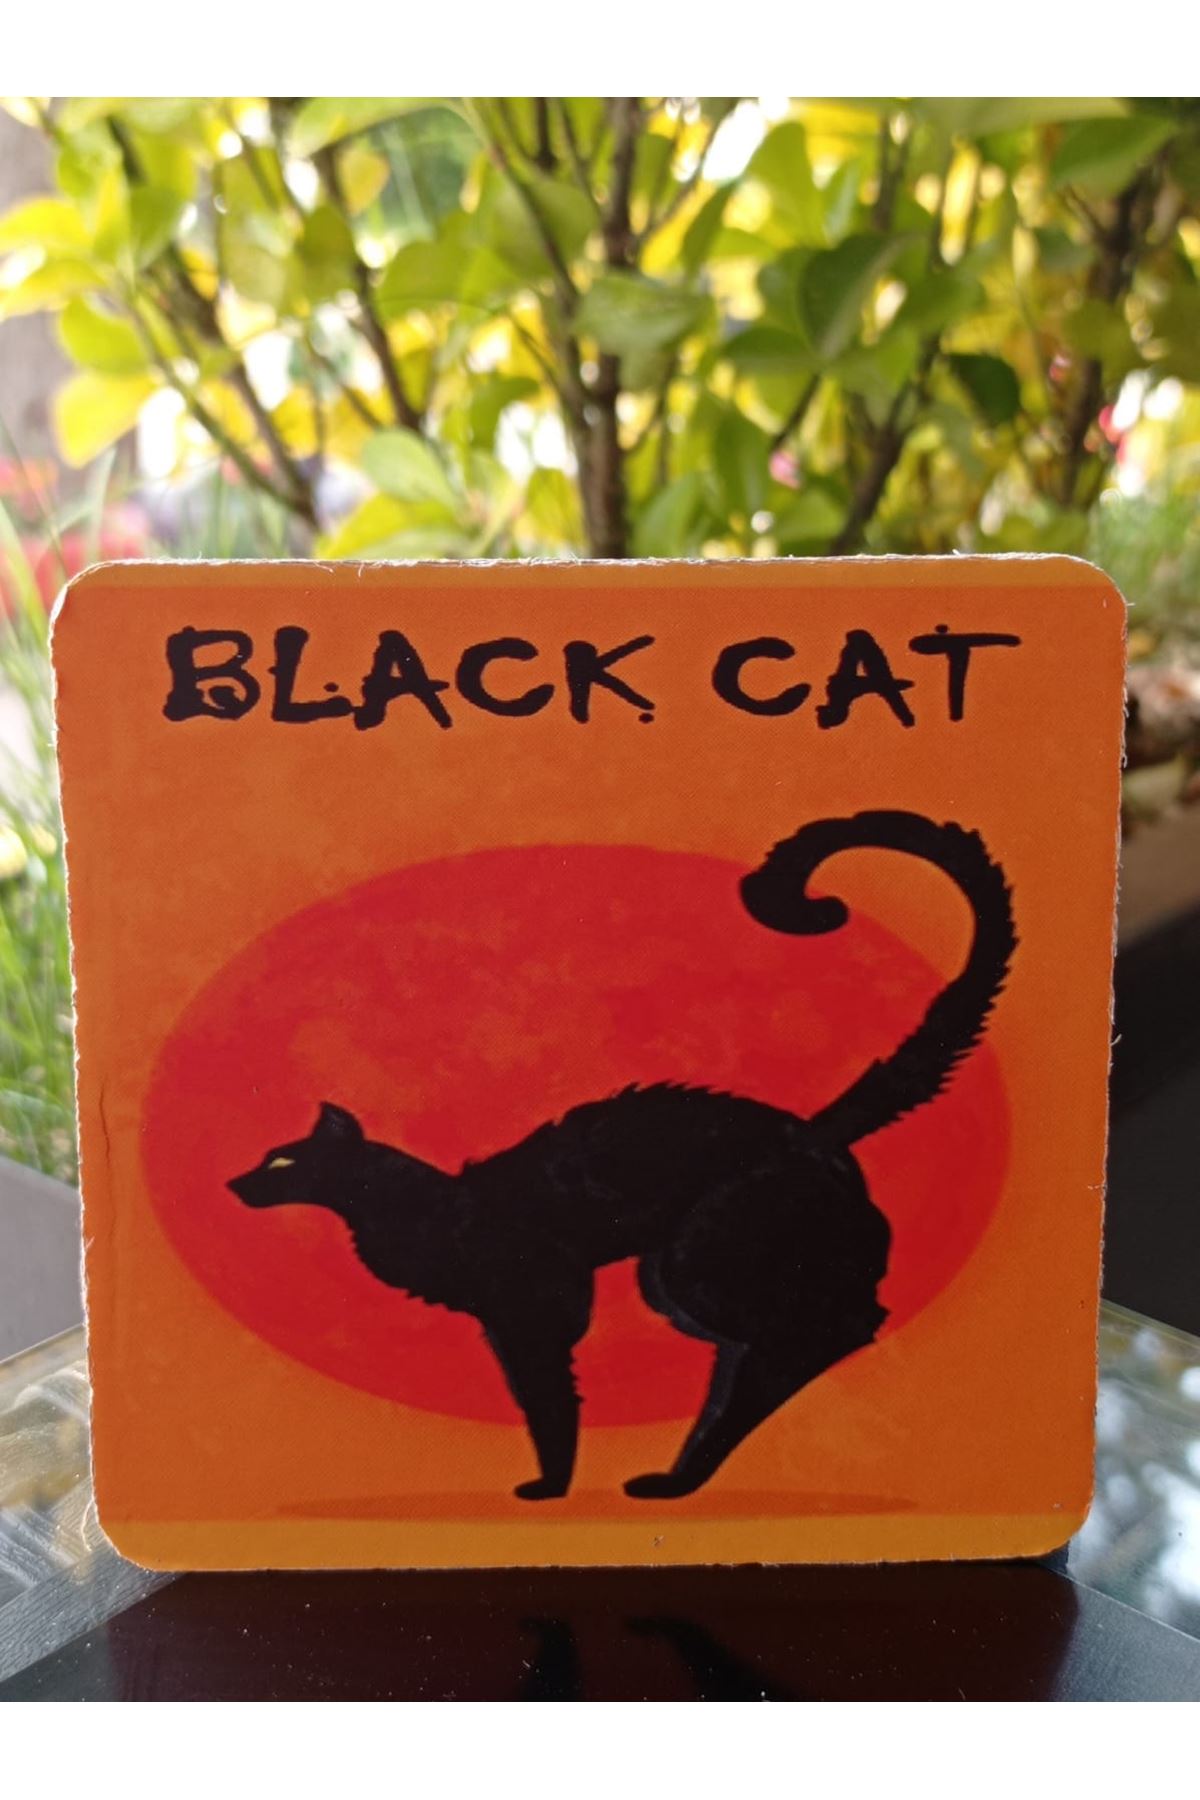 BLACK CAT - AHŞAP BARDAK ALTLIĞI